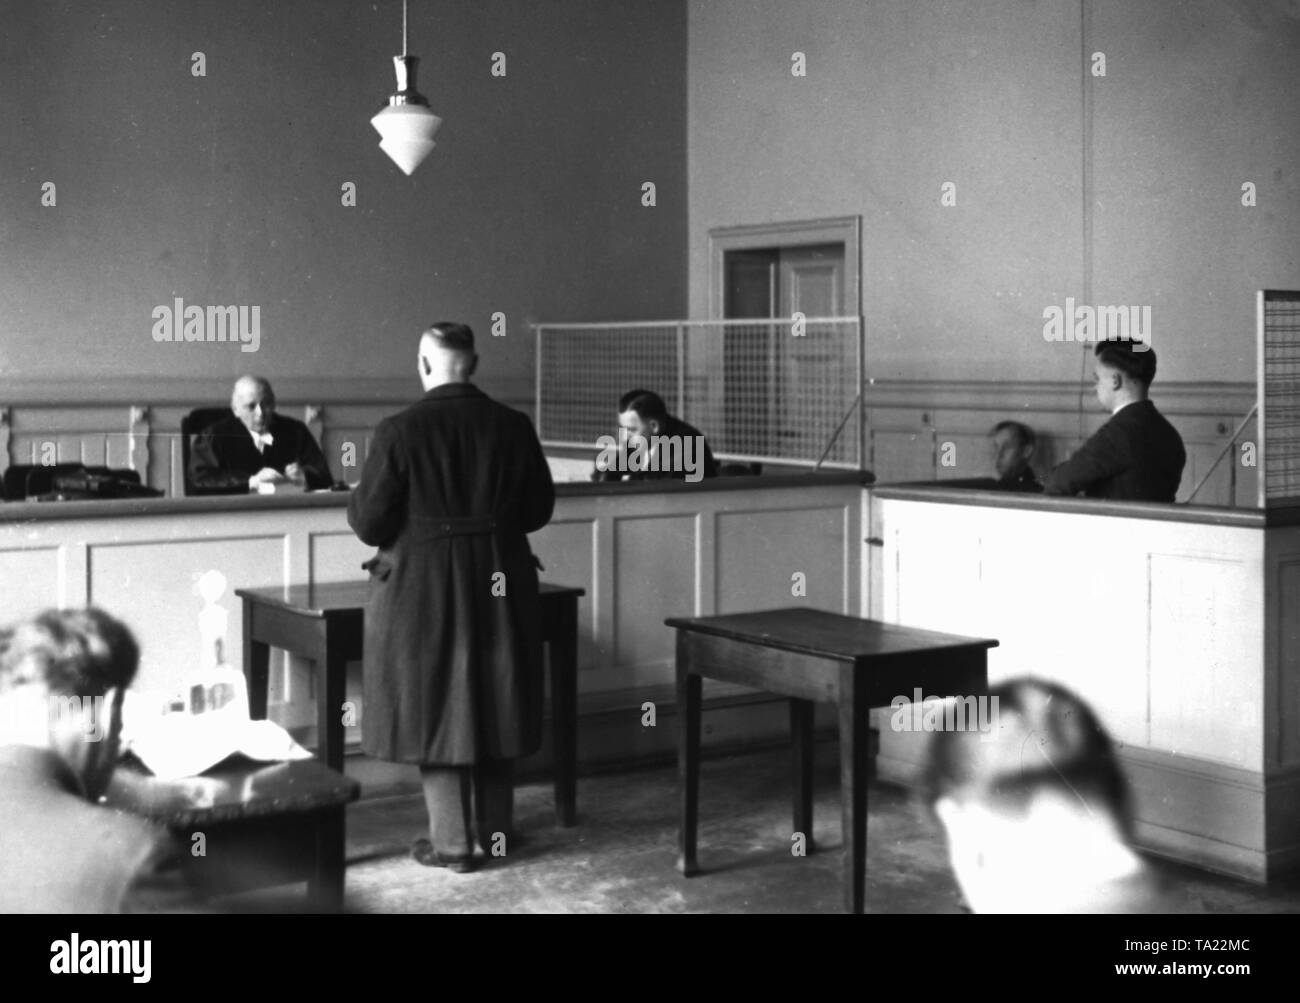 Alois Broll ist ein vor dem hohen Gericht vorgeworfen. Die arbeitslosen hatten die Reichstagspalais trat wenige Tage vor, mit einem parabolischen Pistole. Der Grund dafür war seine Hoffnungslosigkeit. Stockfoto